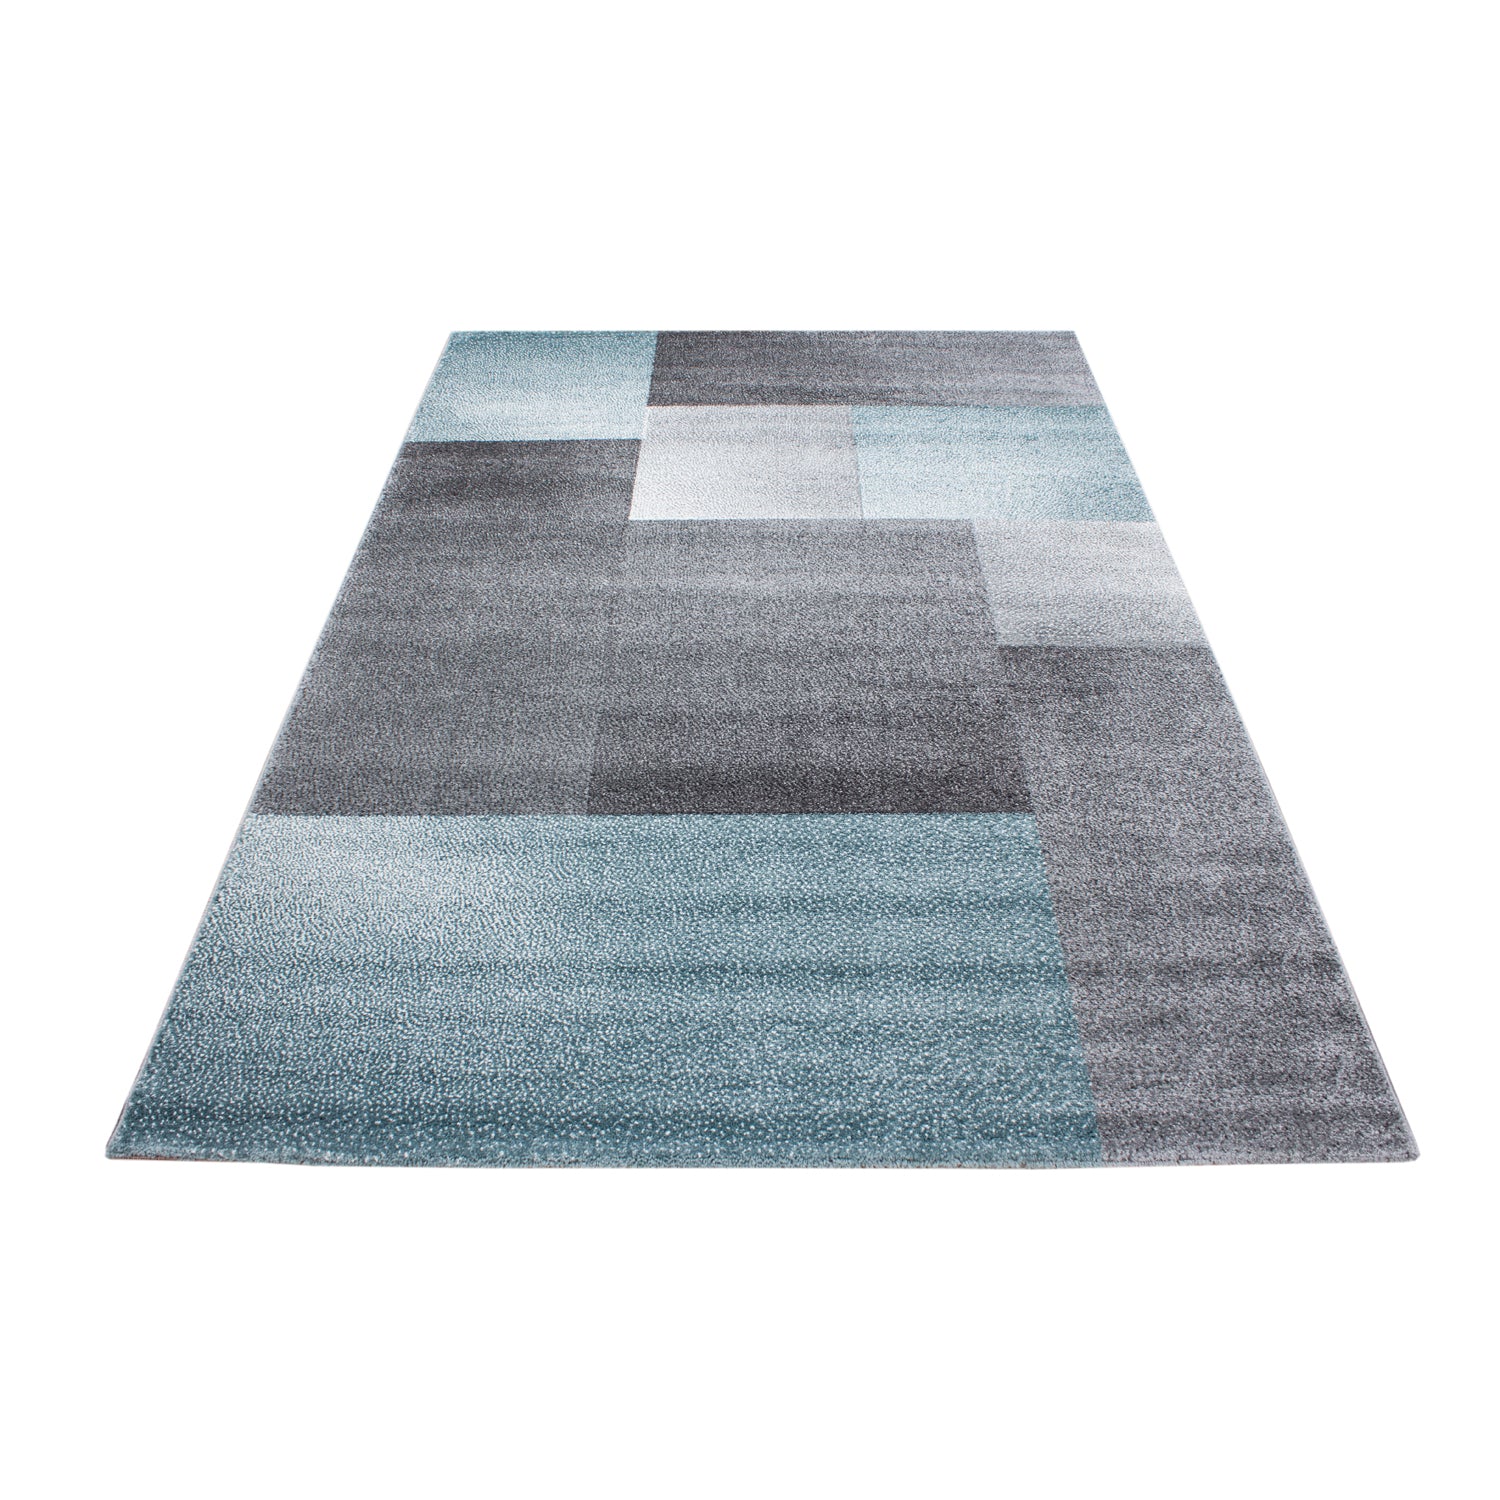 Kurzflor Design Teppich Rechteck Karo Muster Wohnzimmerteppich Grau Blau Meliert